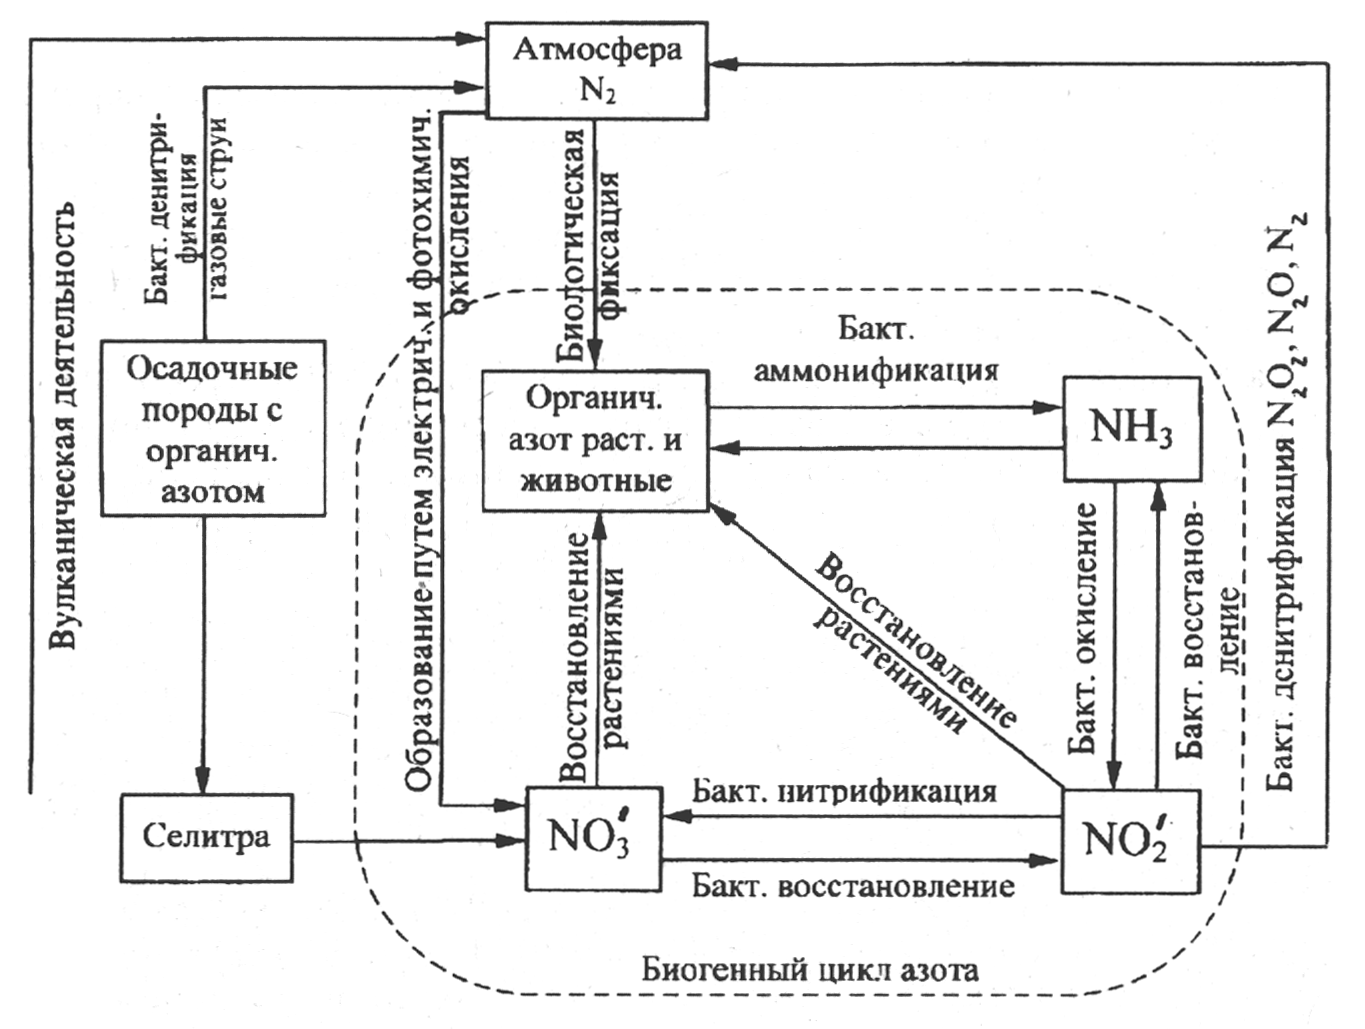 Установите последовательность круговорота азота в атмосфере